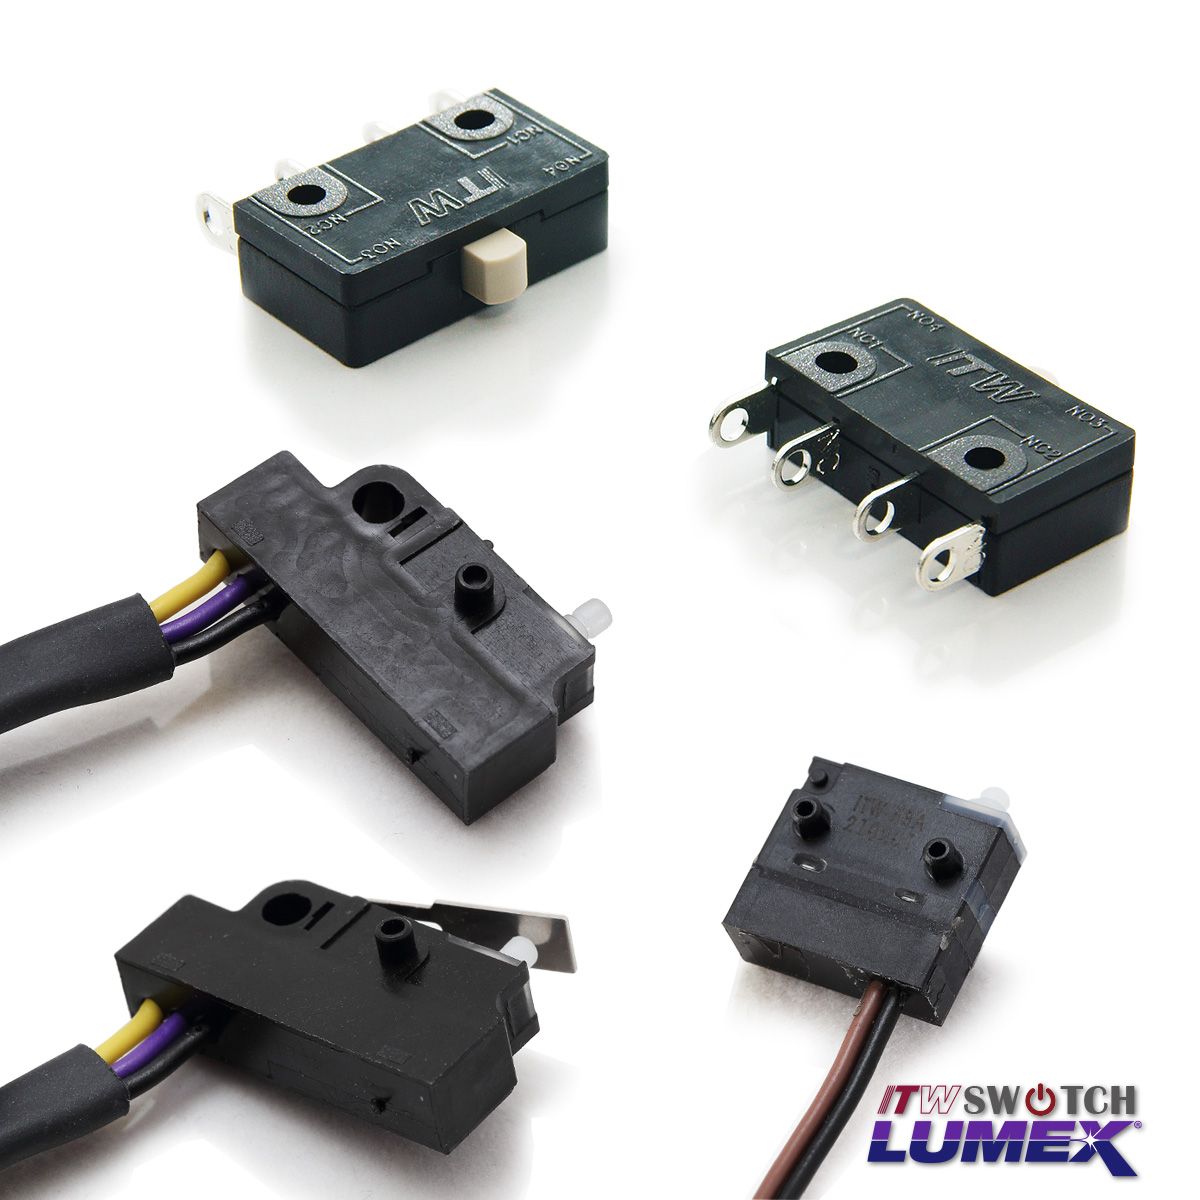 ITW Lumex Switchتوفر Micro Switches كجزء من عروض منتجاتها.